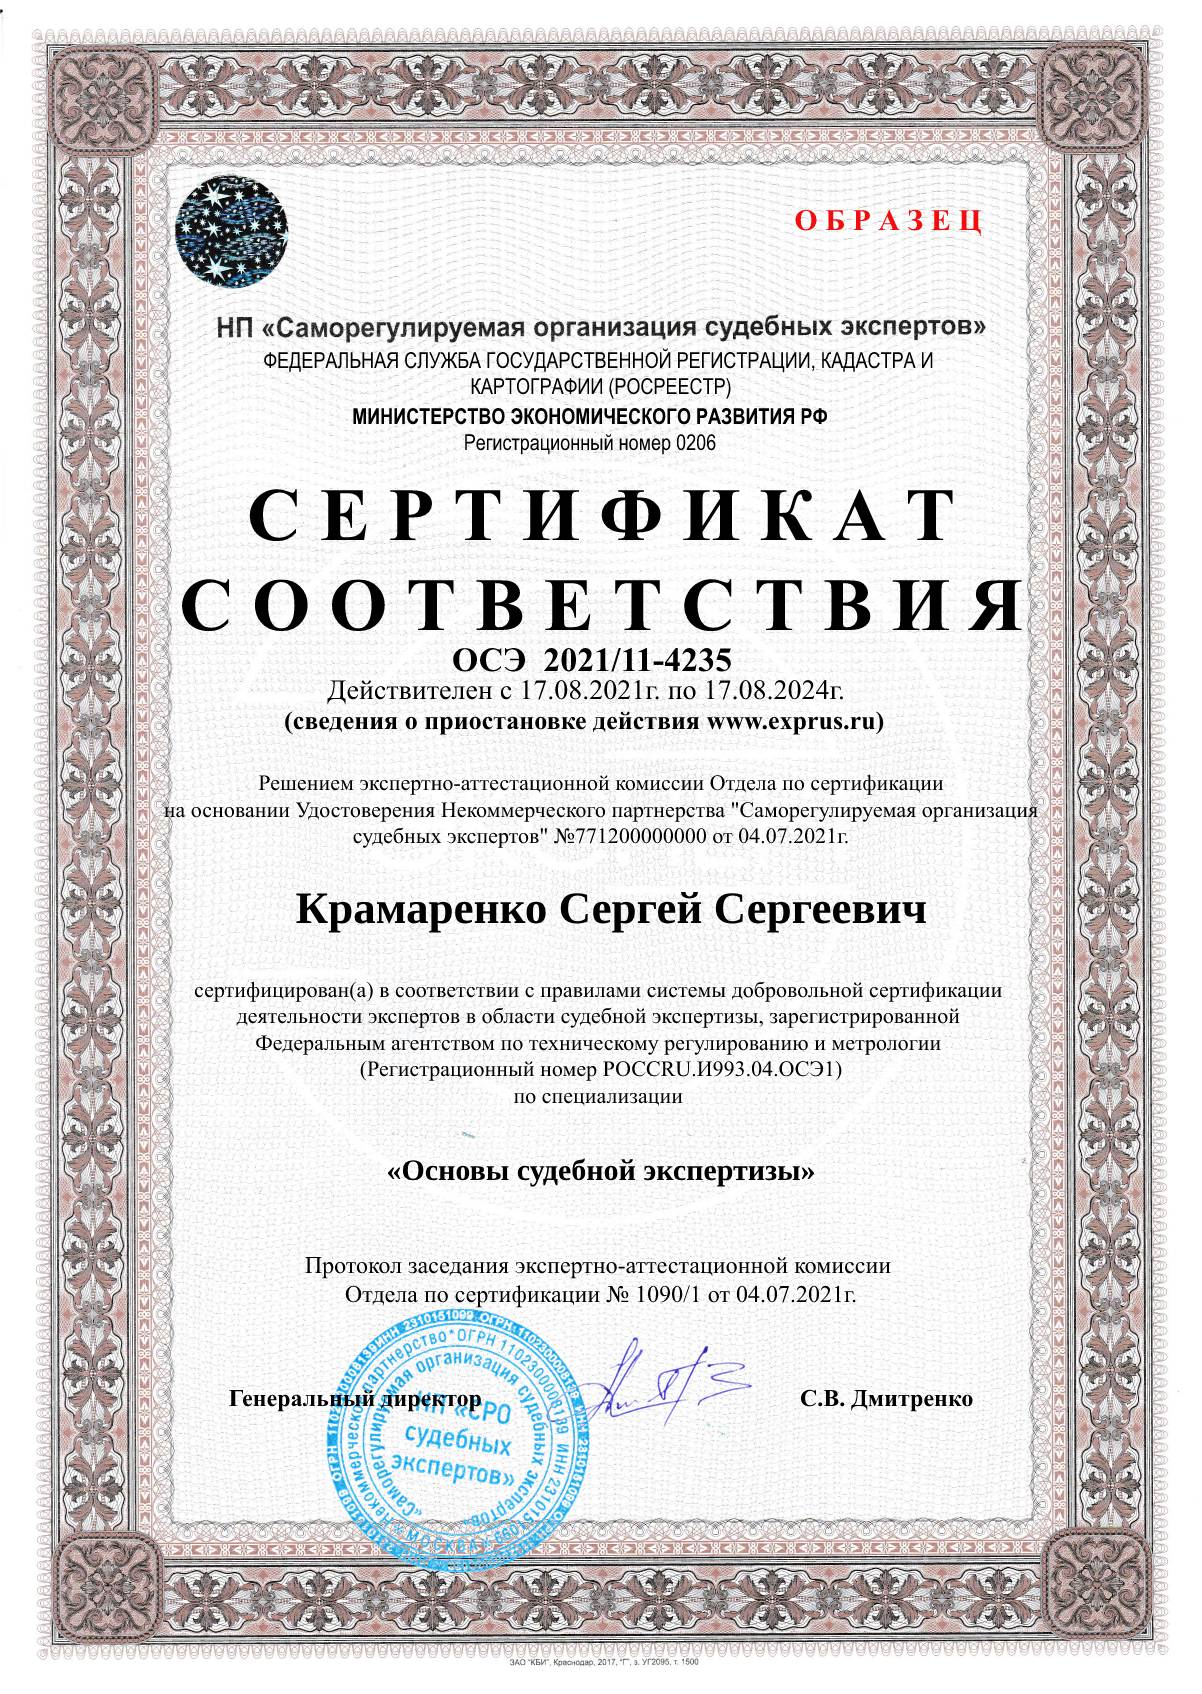 После прохождения первого модуля слушатели получают электронный сертификат «Основы судебной экспертизы».